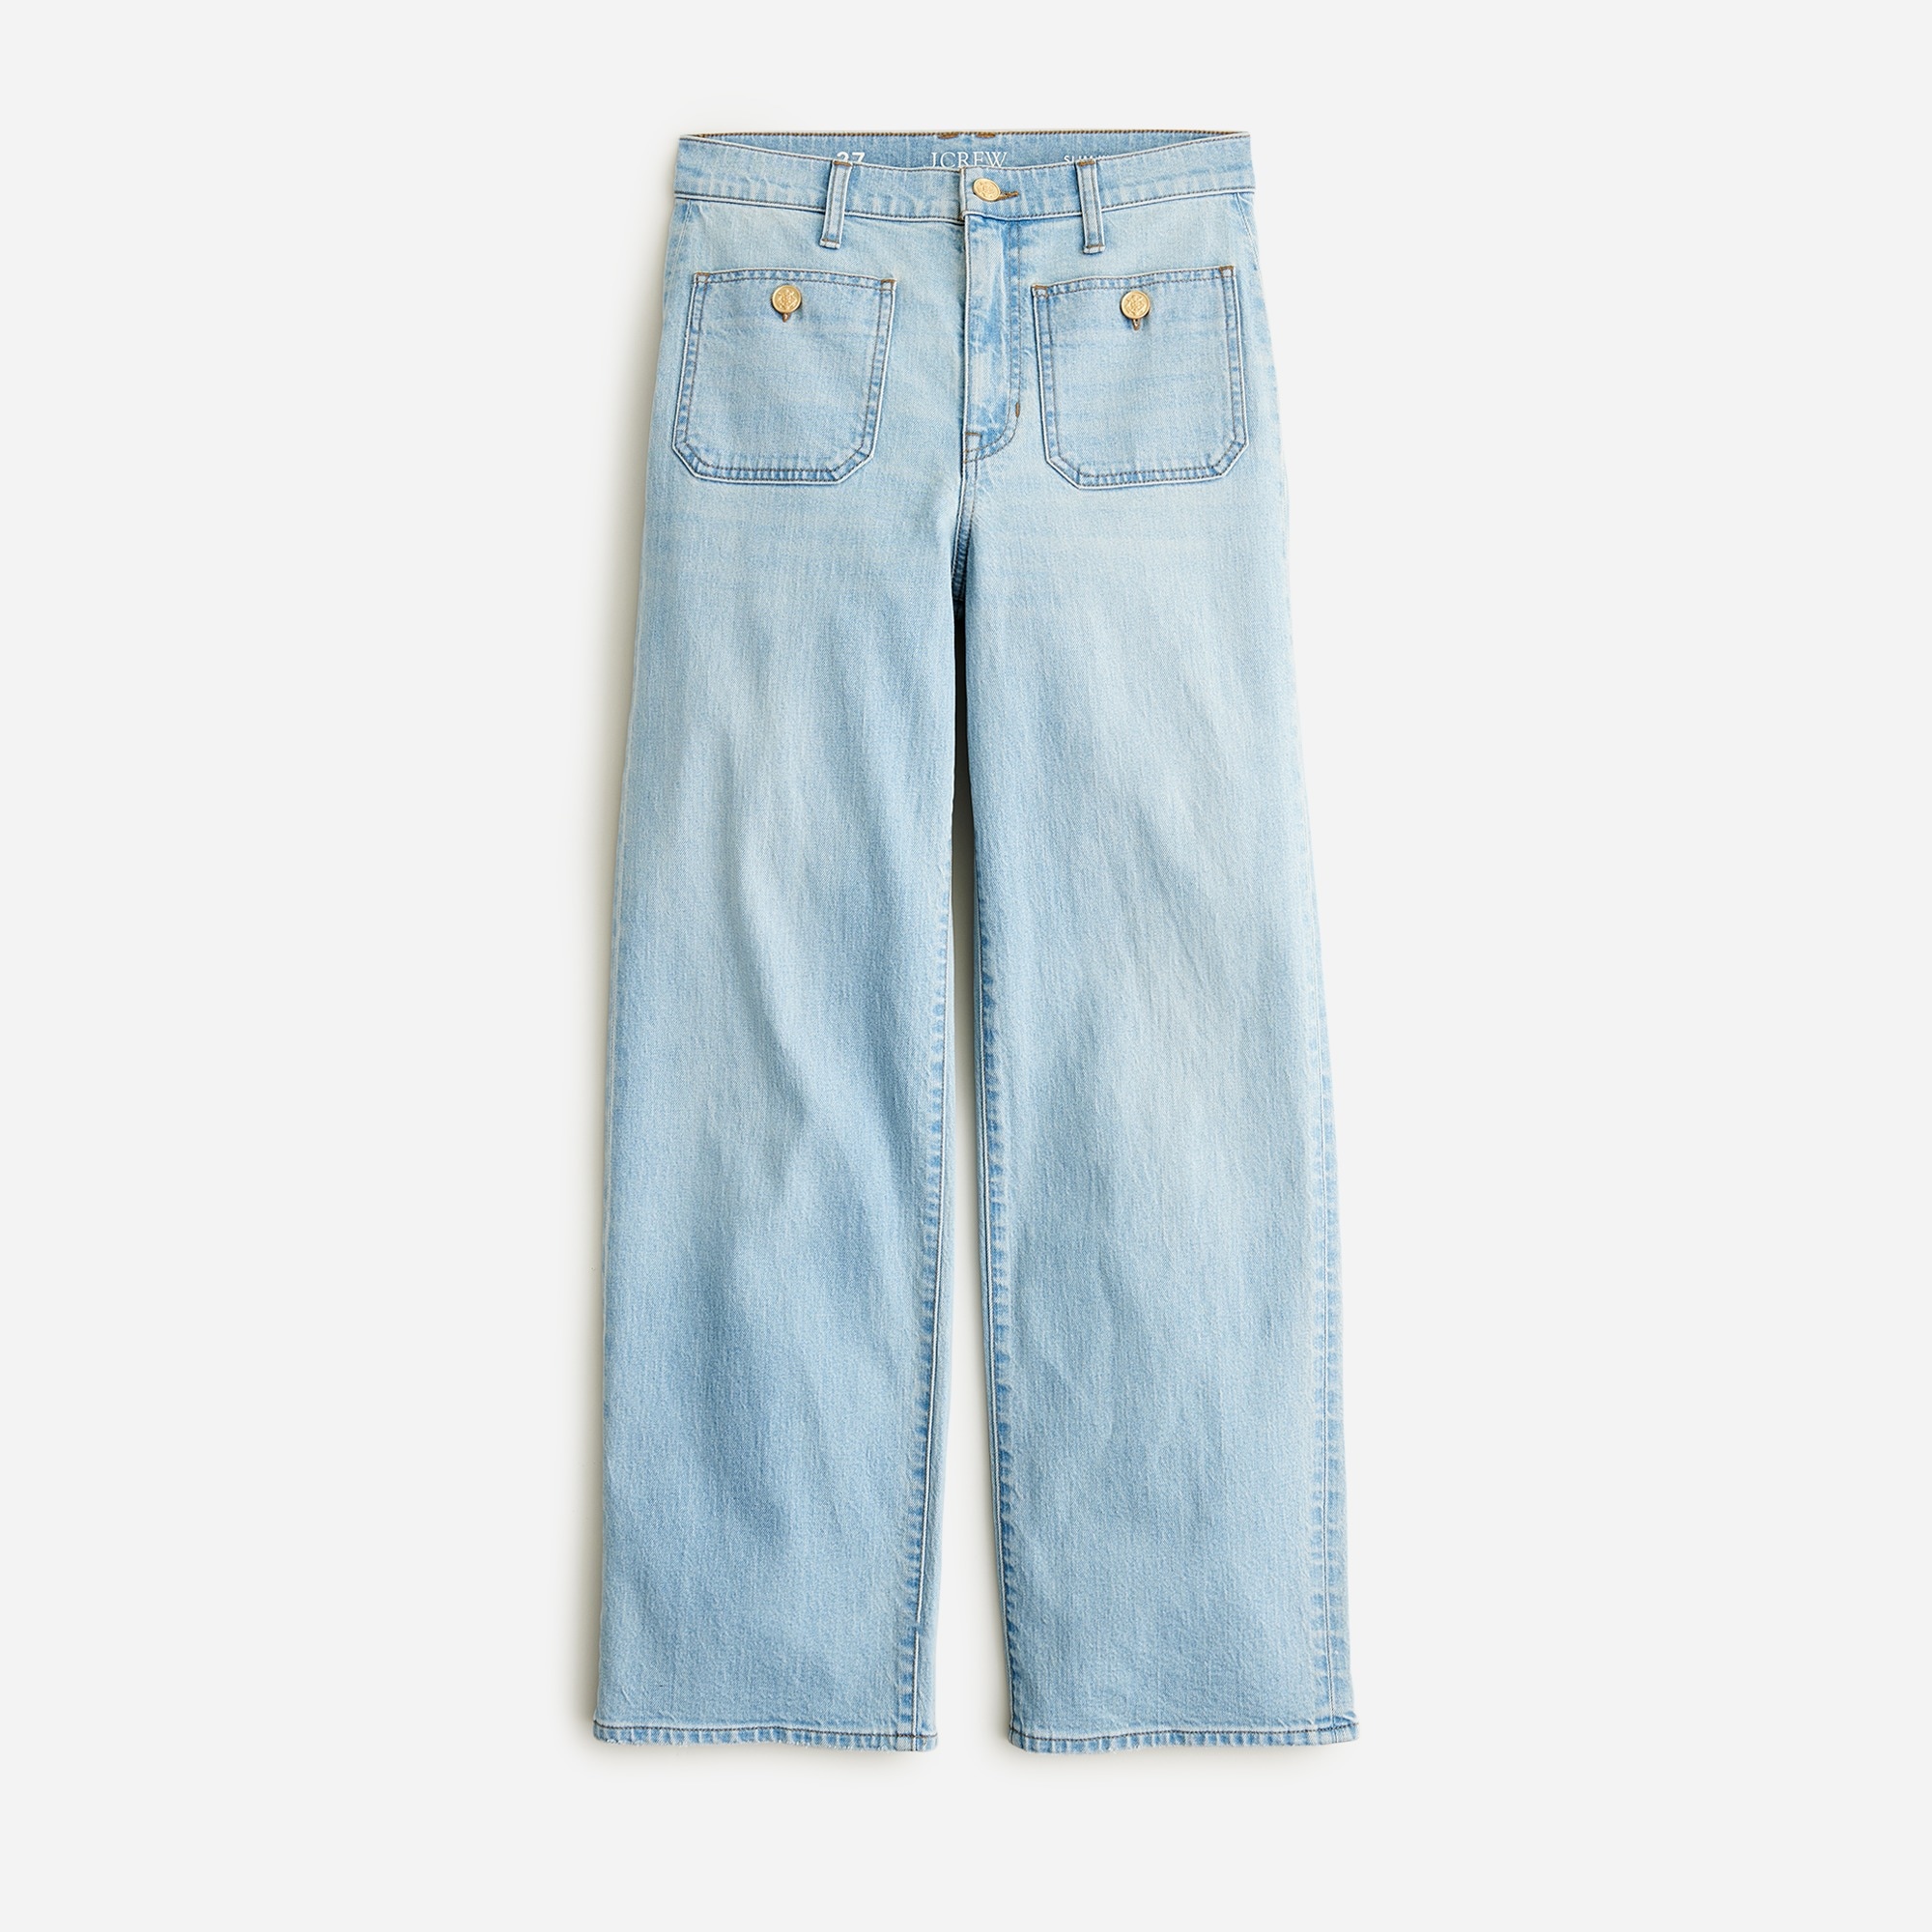  Petite sailor slim wide-leg jean in Clear Skies wash